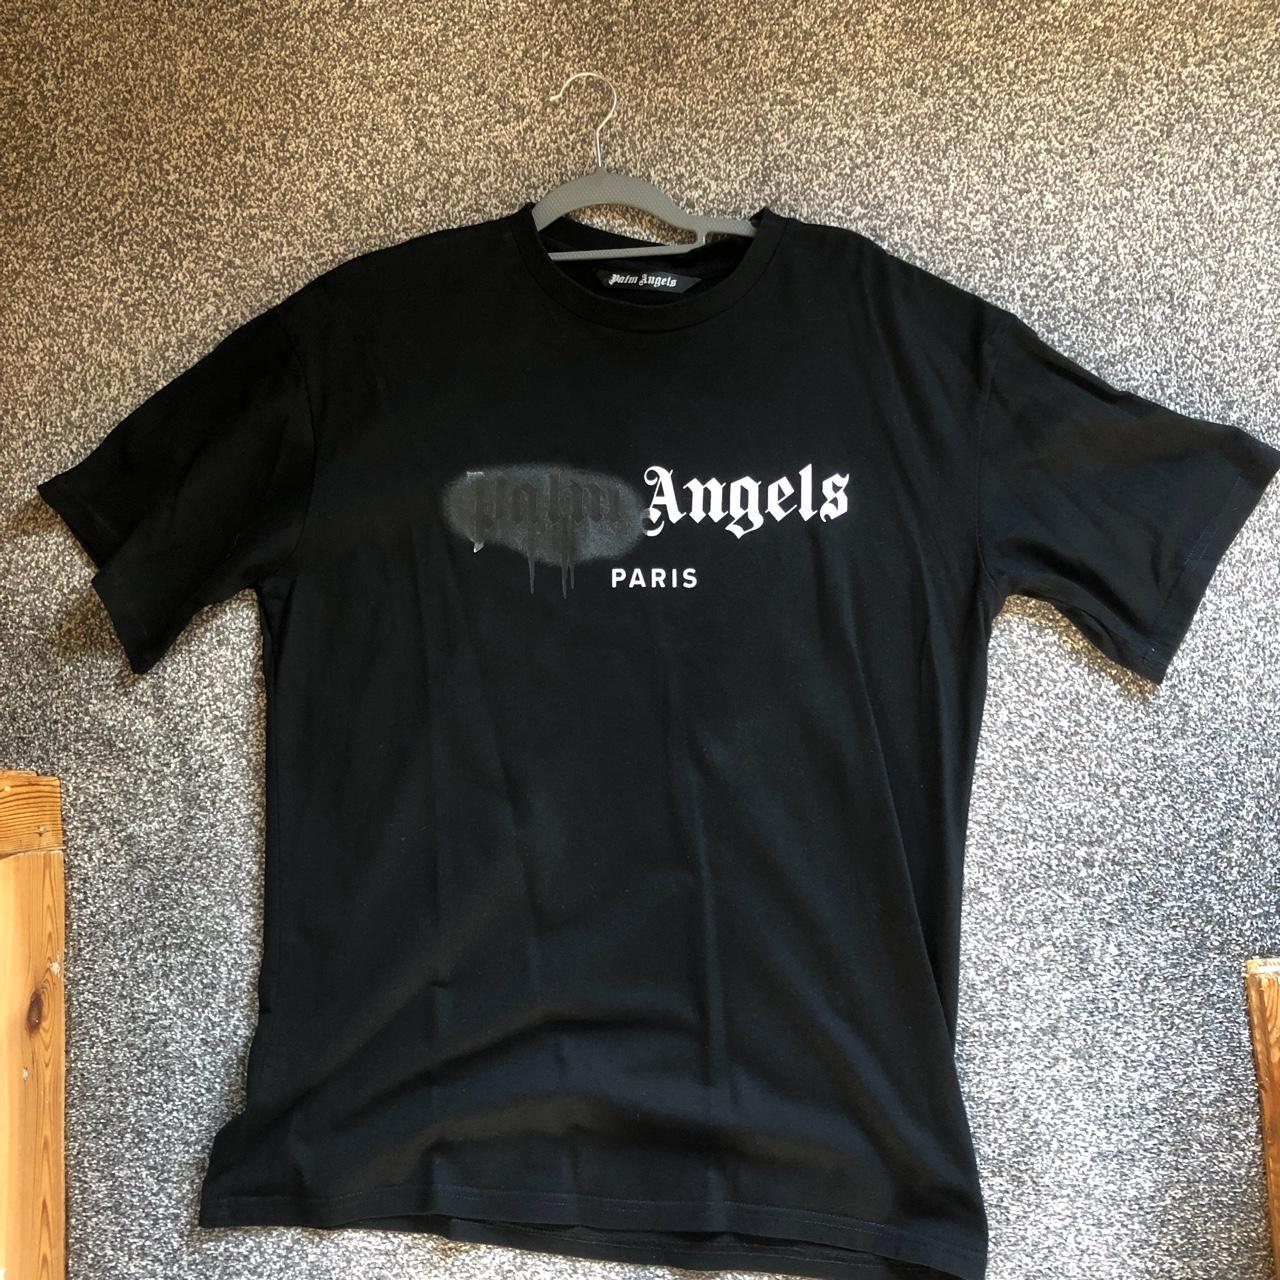 Paris Angels T-Shirts for Sale